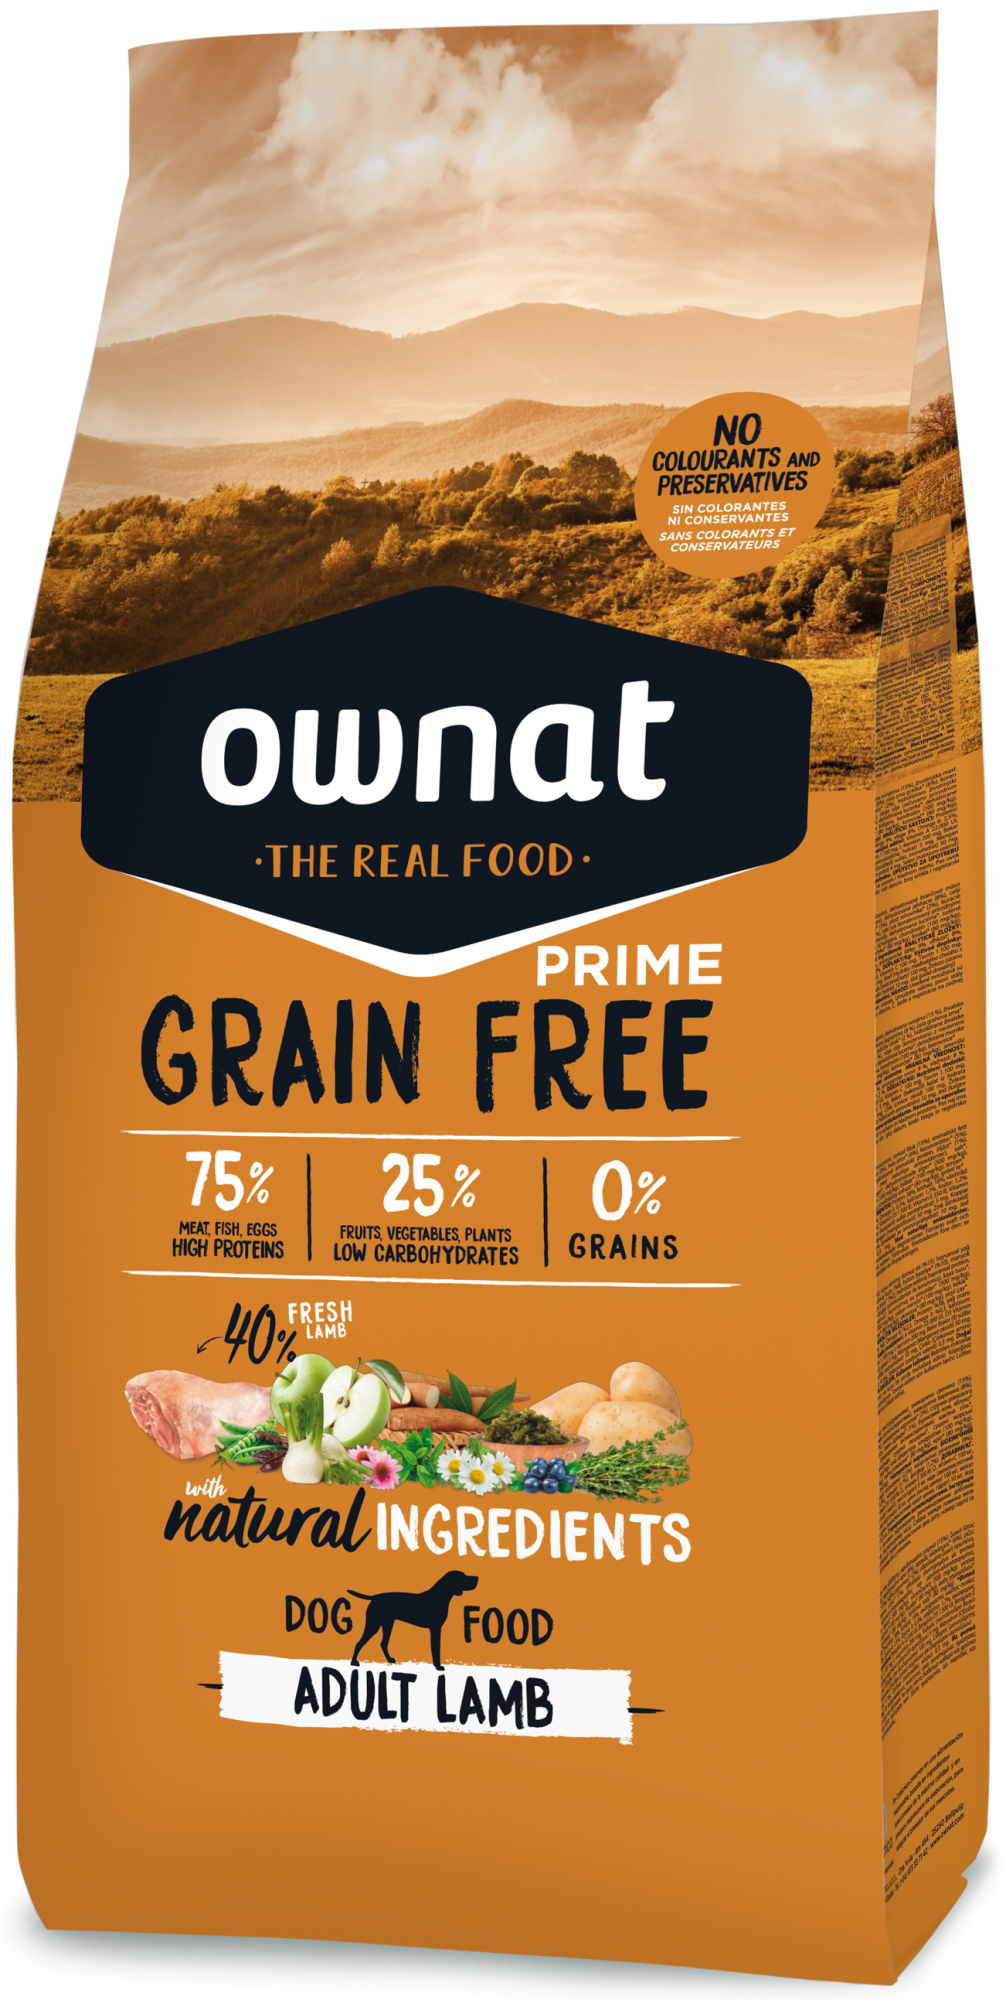 OWNAT Prime Grain Free mit Lammfleisch für erwachsene Hunde